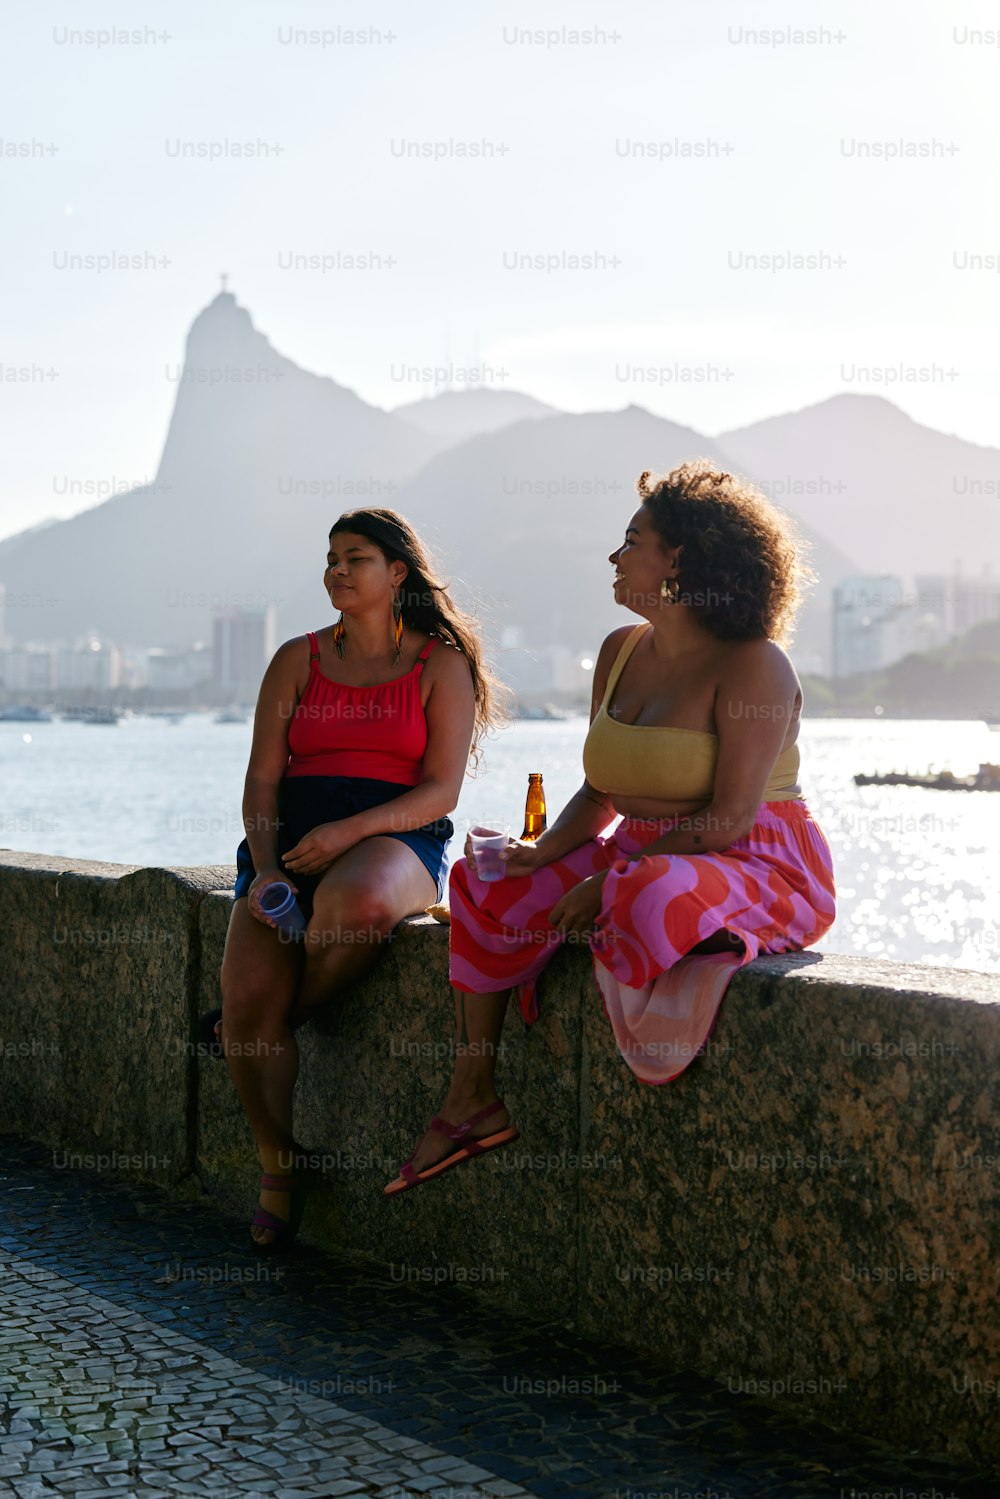 돌담 위에 앉아 있는 두 명의 여성